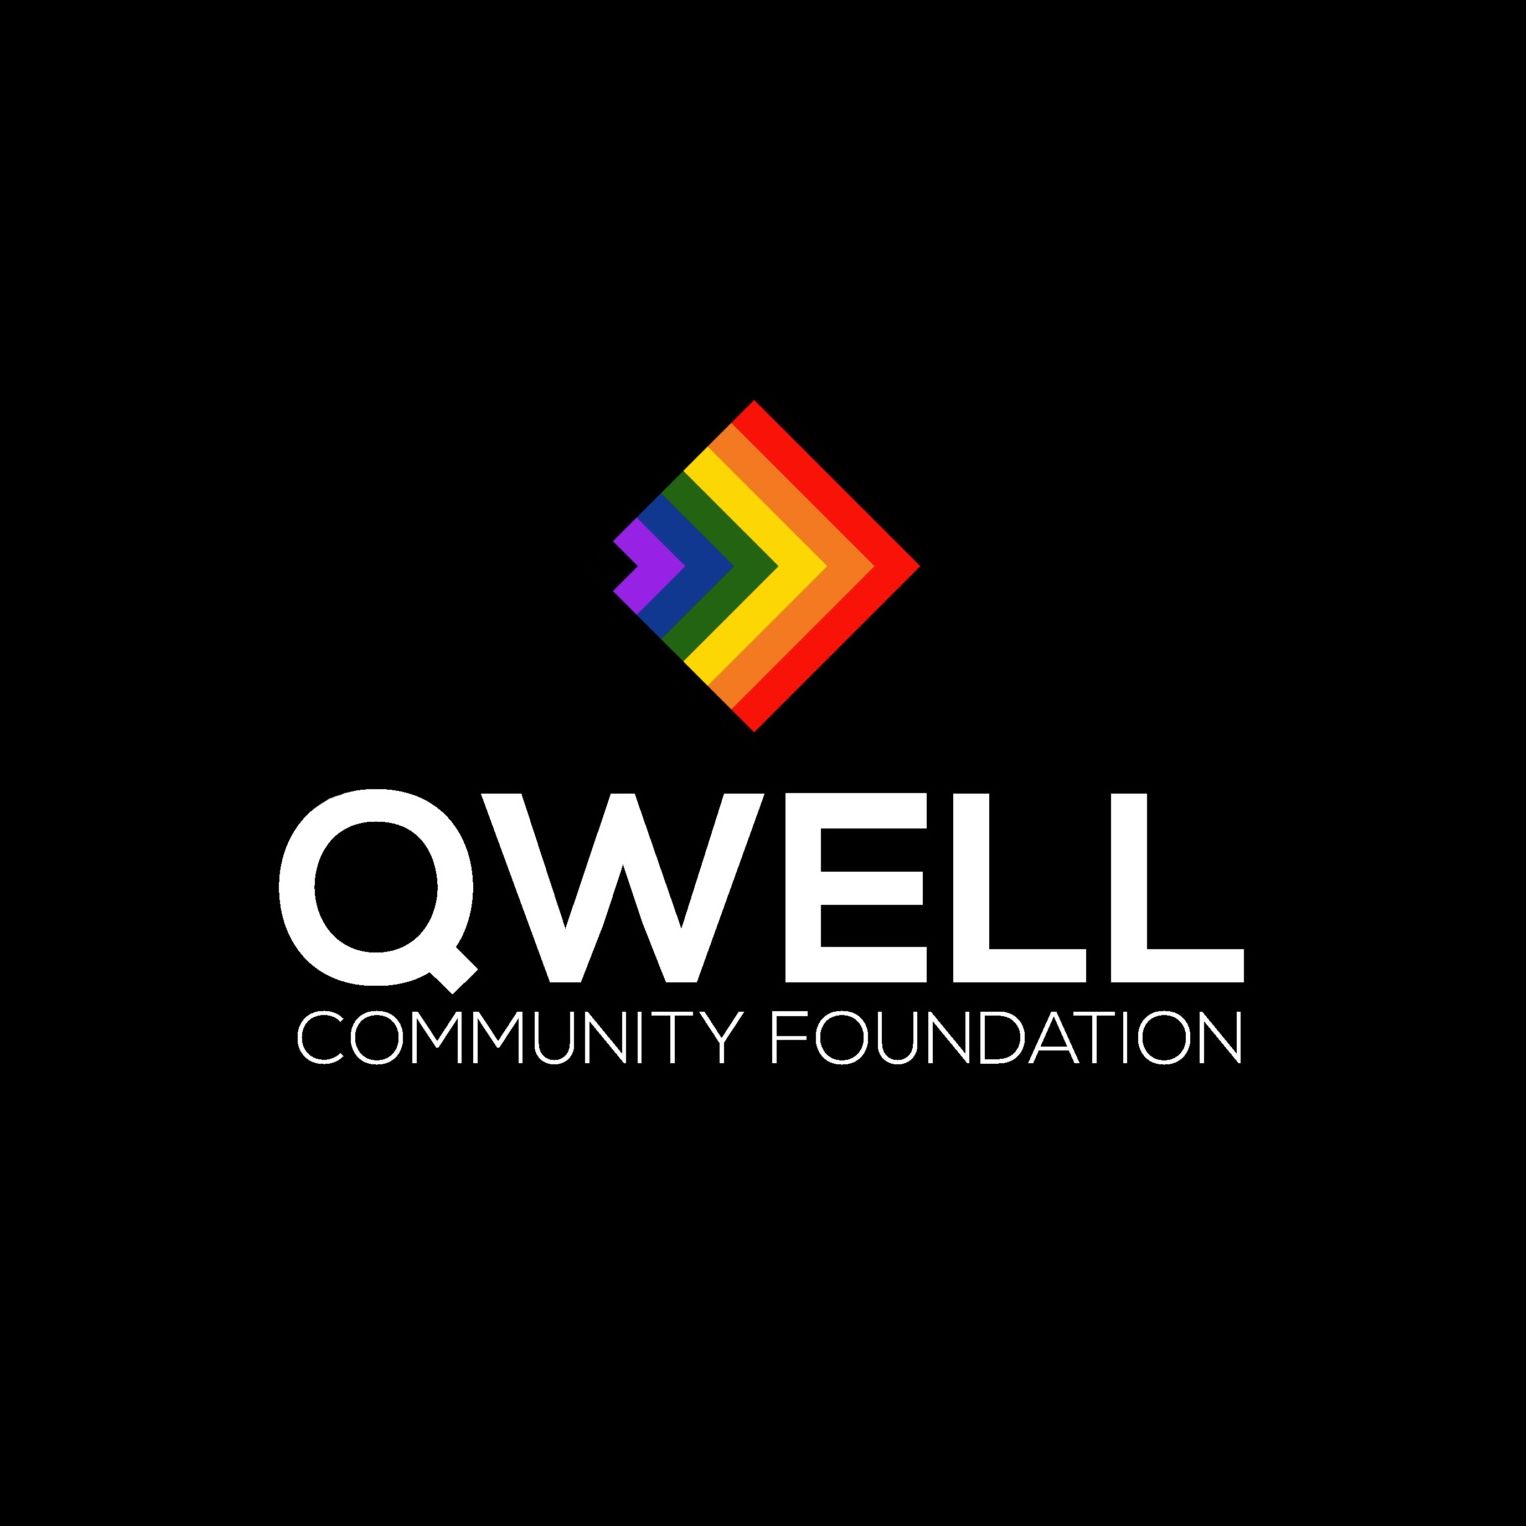 LGBTQ Organization in Texas - QWELL Community Foundation